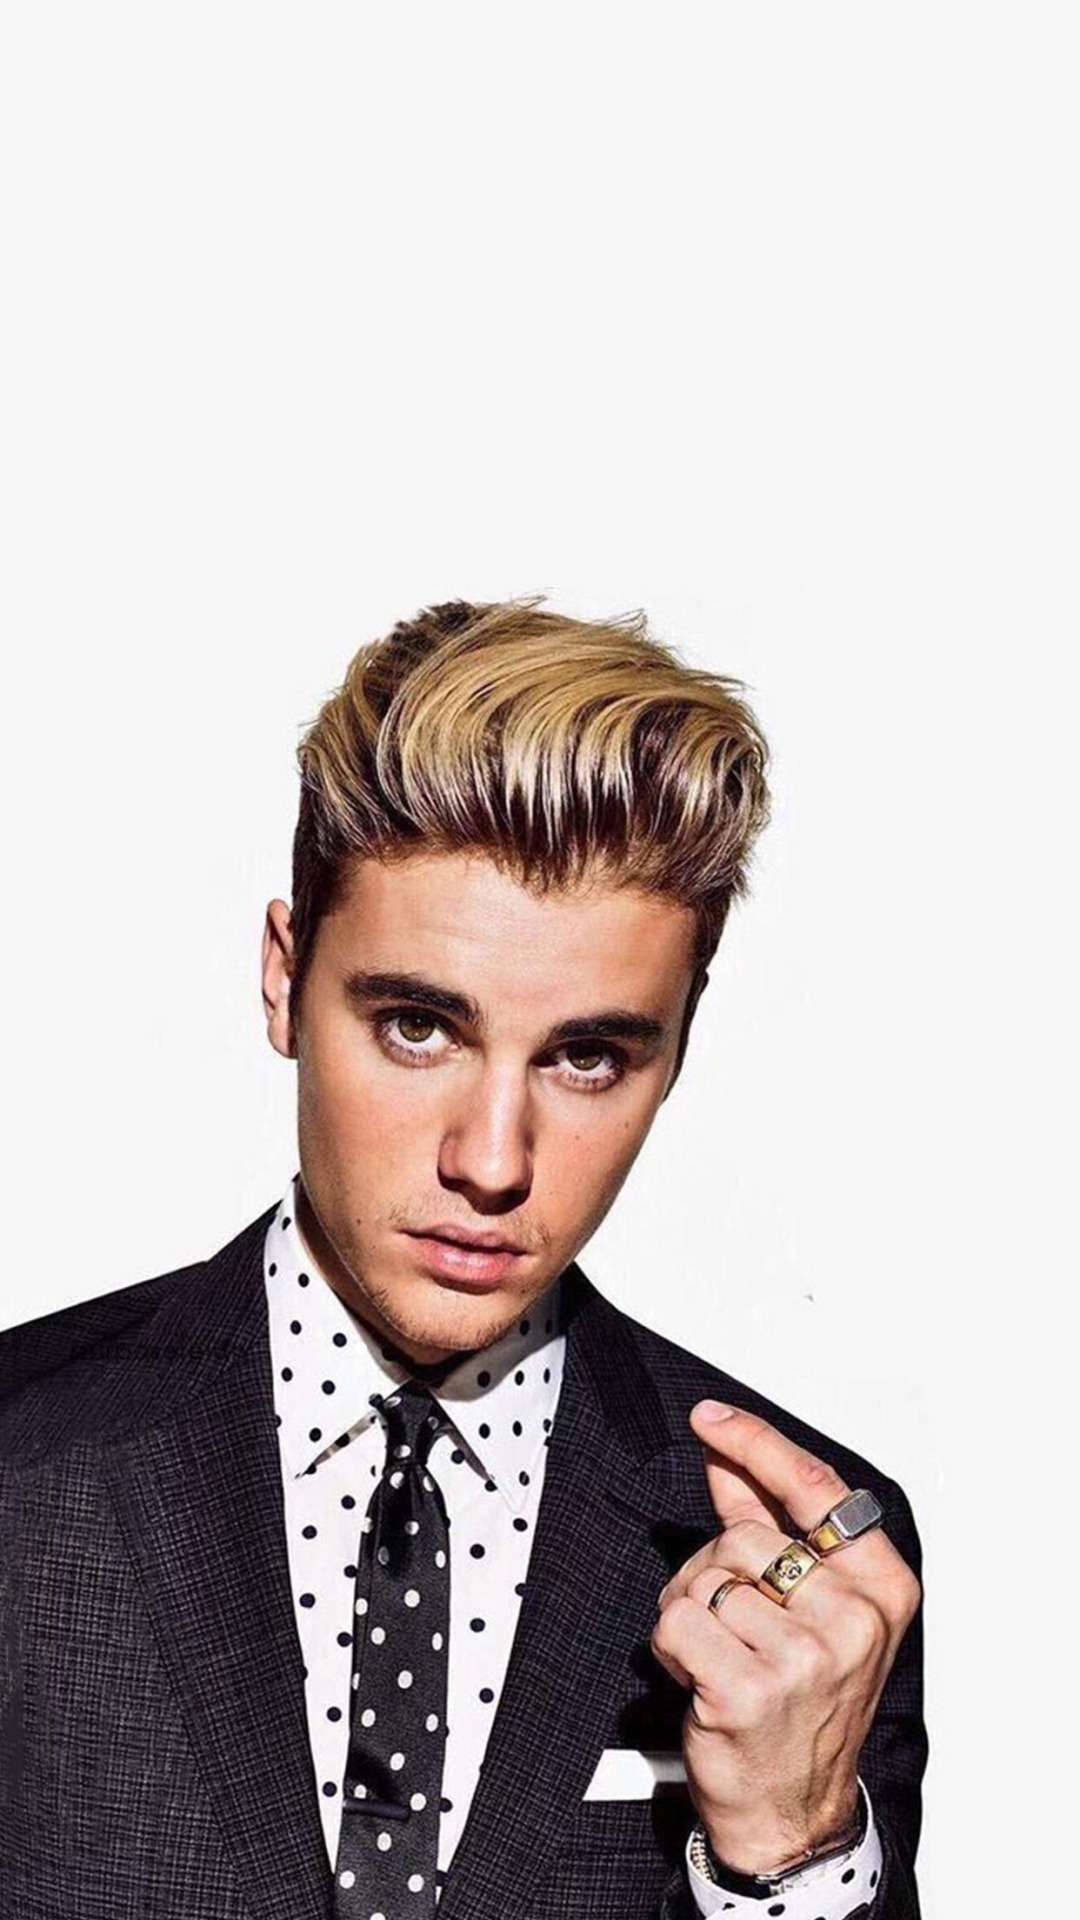 Pop Star Justin Bieber Arrives In A Black Suit. Background